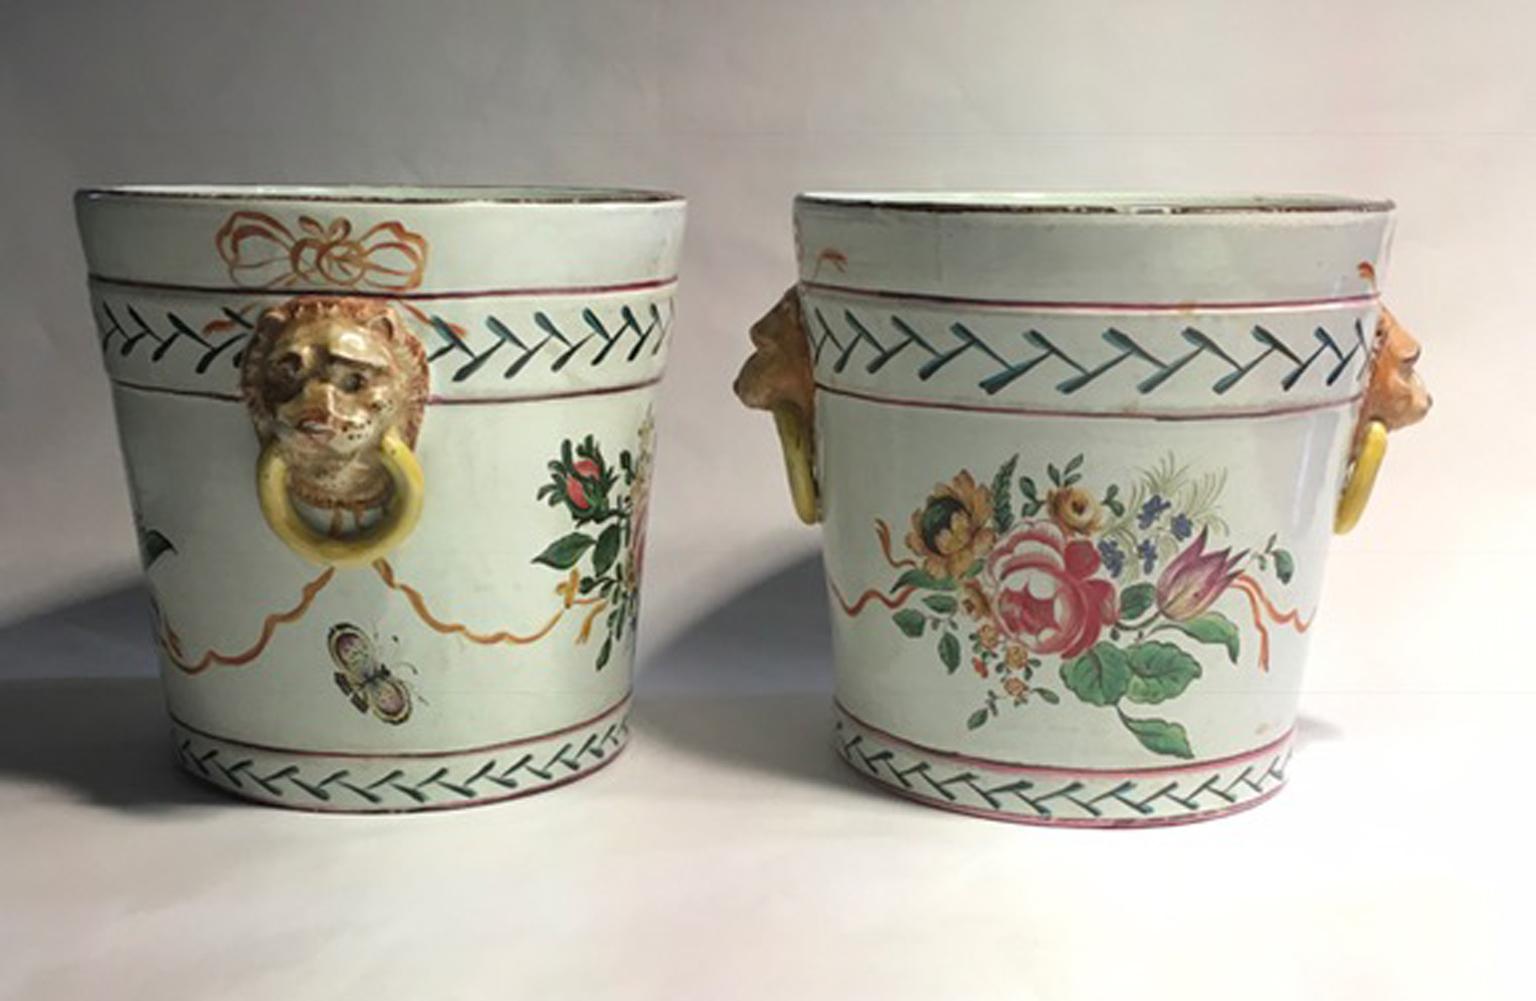 Frankreich, spätes 19. Jahrhundert, zwei Übertöpfe mit Blumen und Löwenköpfen. 

Dieses Paar schöne Vasen, sind eine sehr dekorative Cache-Topf, mit einem Paar von Löwenköpfen als Griffe.
Rosensträuße ziehen sich an den Seiten